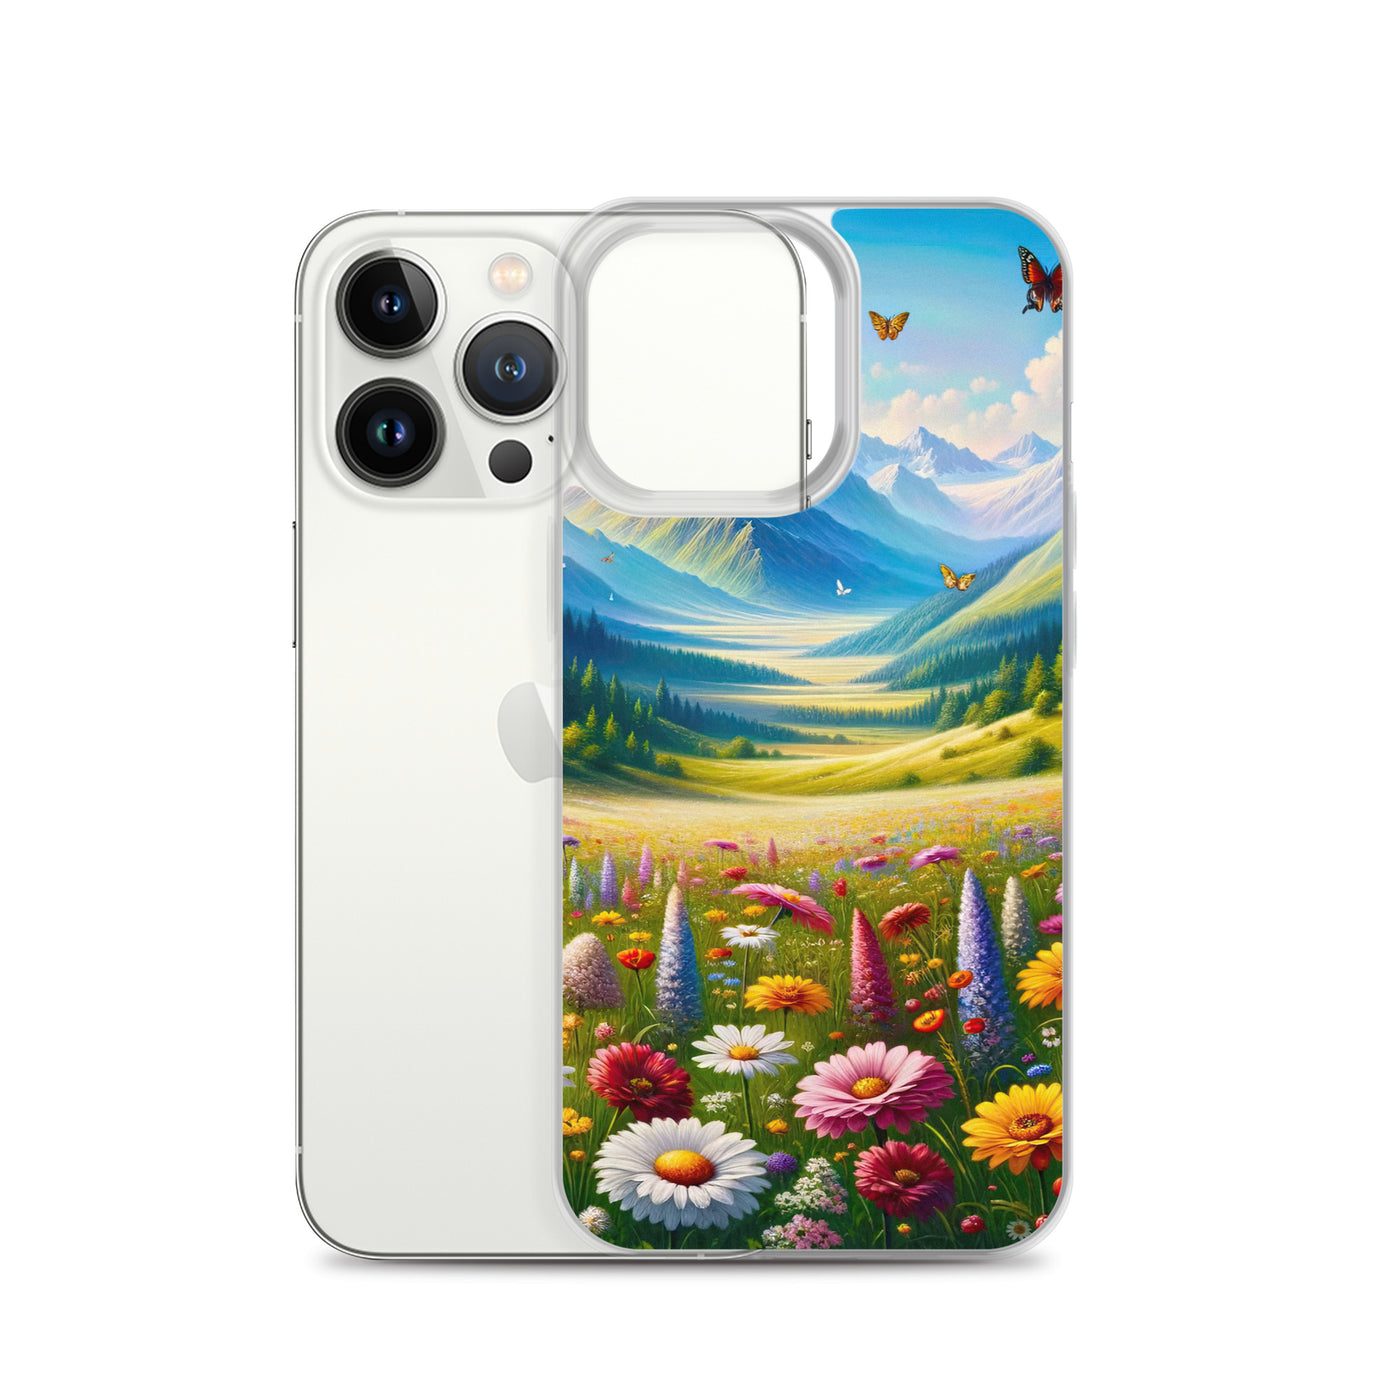 Ölgemälde einer ruhigen Almwiese, Oase mit bunter Wildblumenpracht - iPhone Schutzhülle (durchsichtig) camping xxx yyy zzz